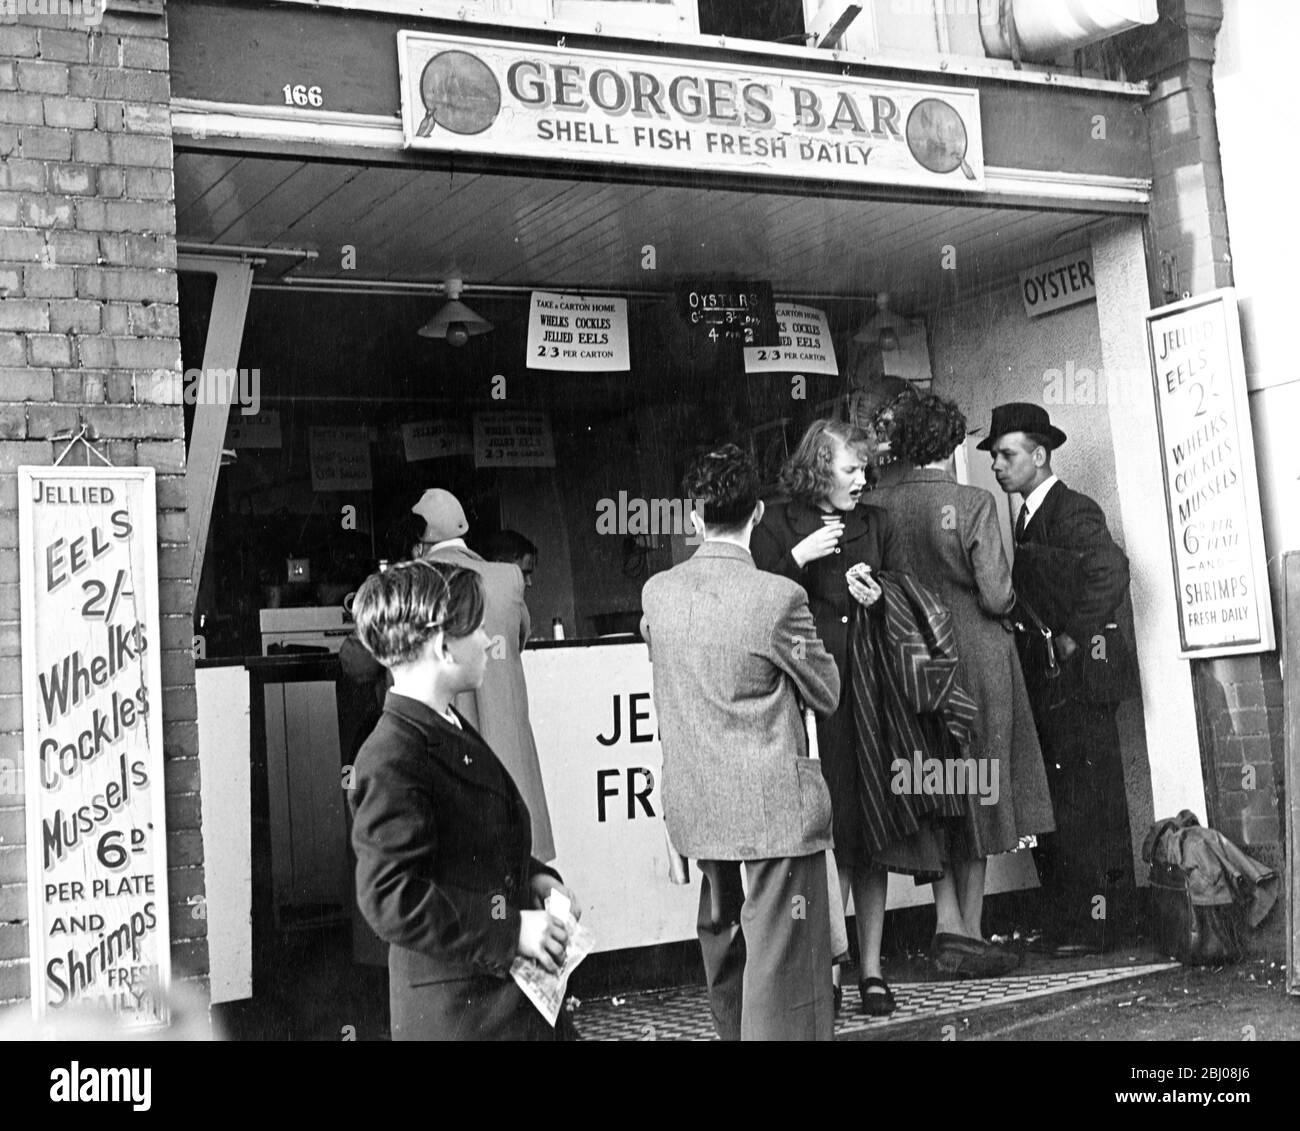 George's Bar - Shell Fish Fresh Daily - EINE Schlange von Leuten wartet darauf, bedient zu werden, aber eine Frau, die gerade ihre Bestellung erhalten hat, scheint nicht allzu beeindruckt vom Geschmack. - 1950er Jahre Stockfoto